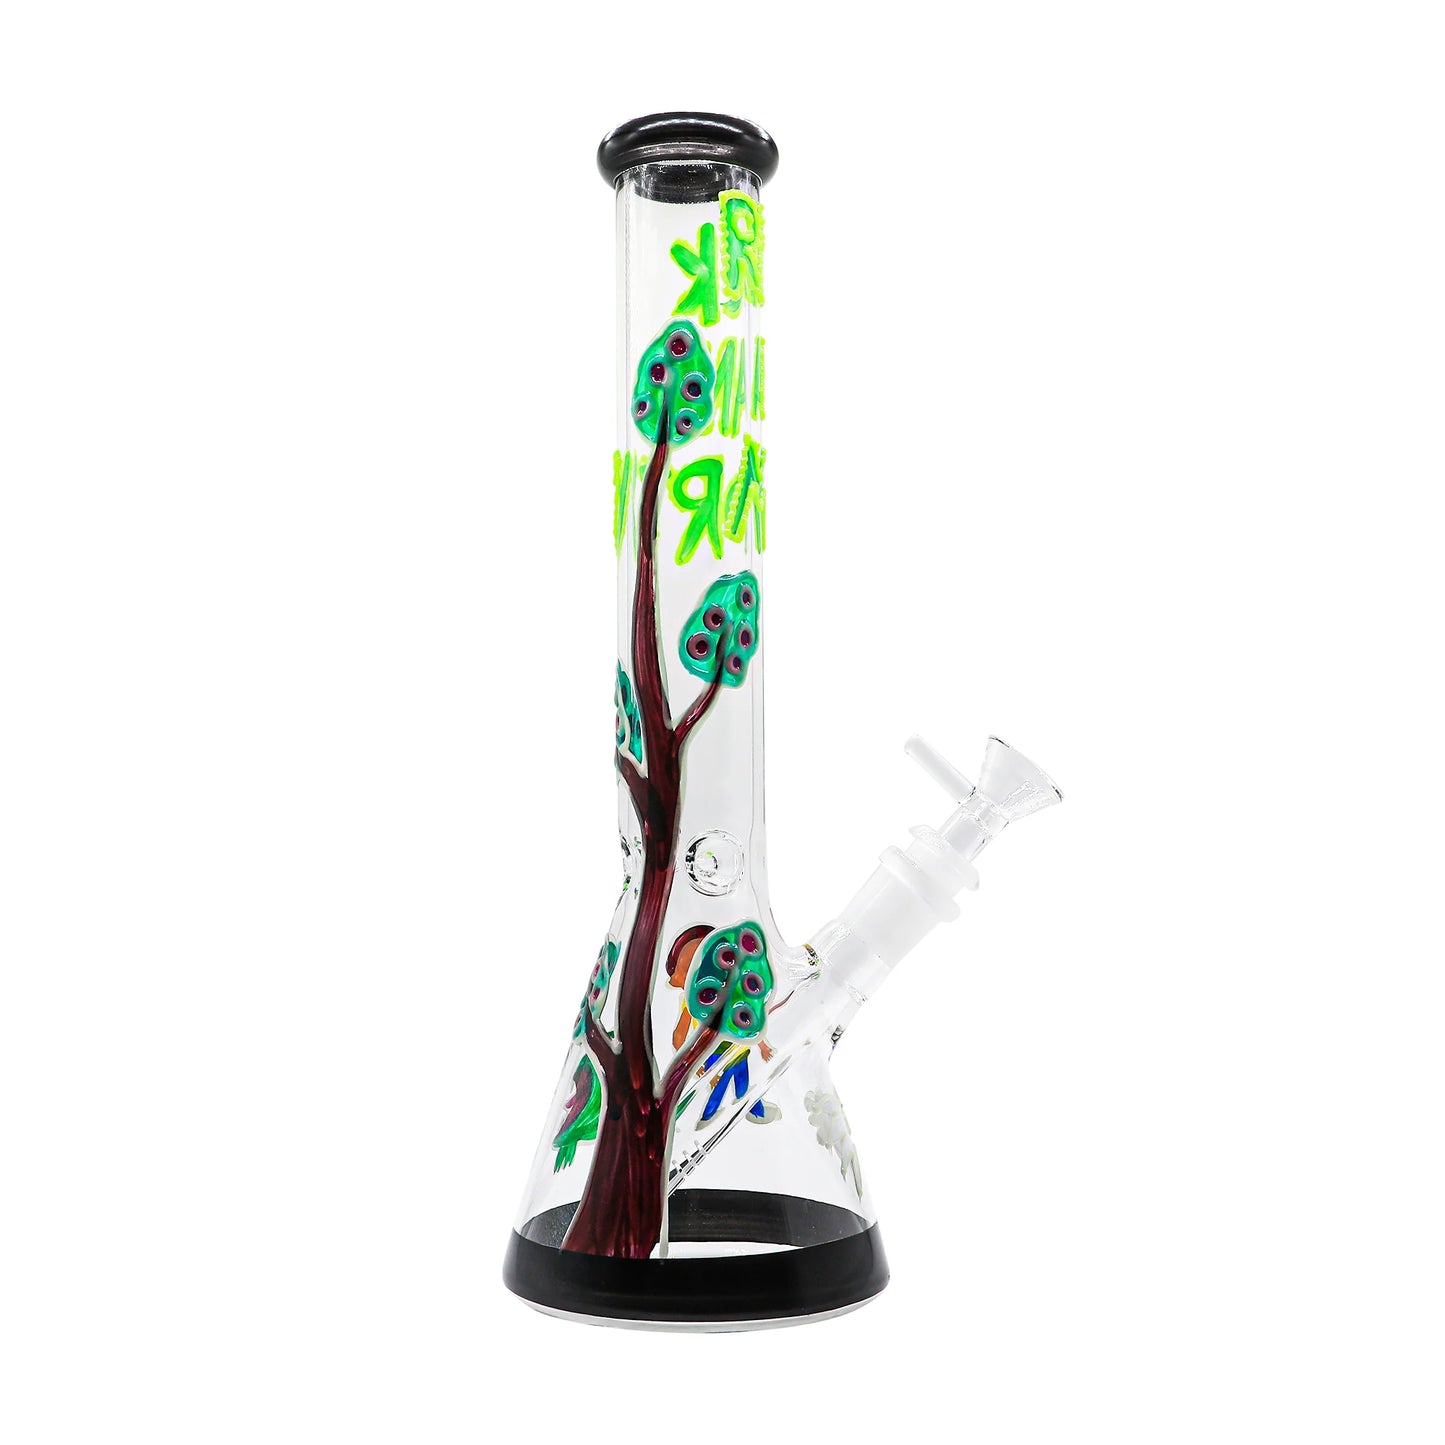 R&m Tree Beaker Shape Glass Waterpipe 30cm